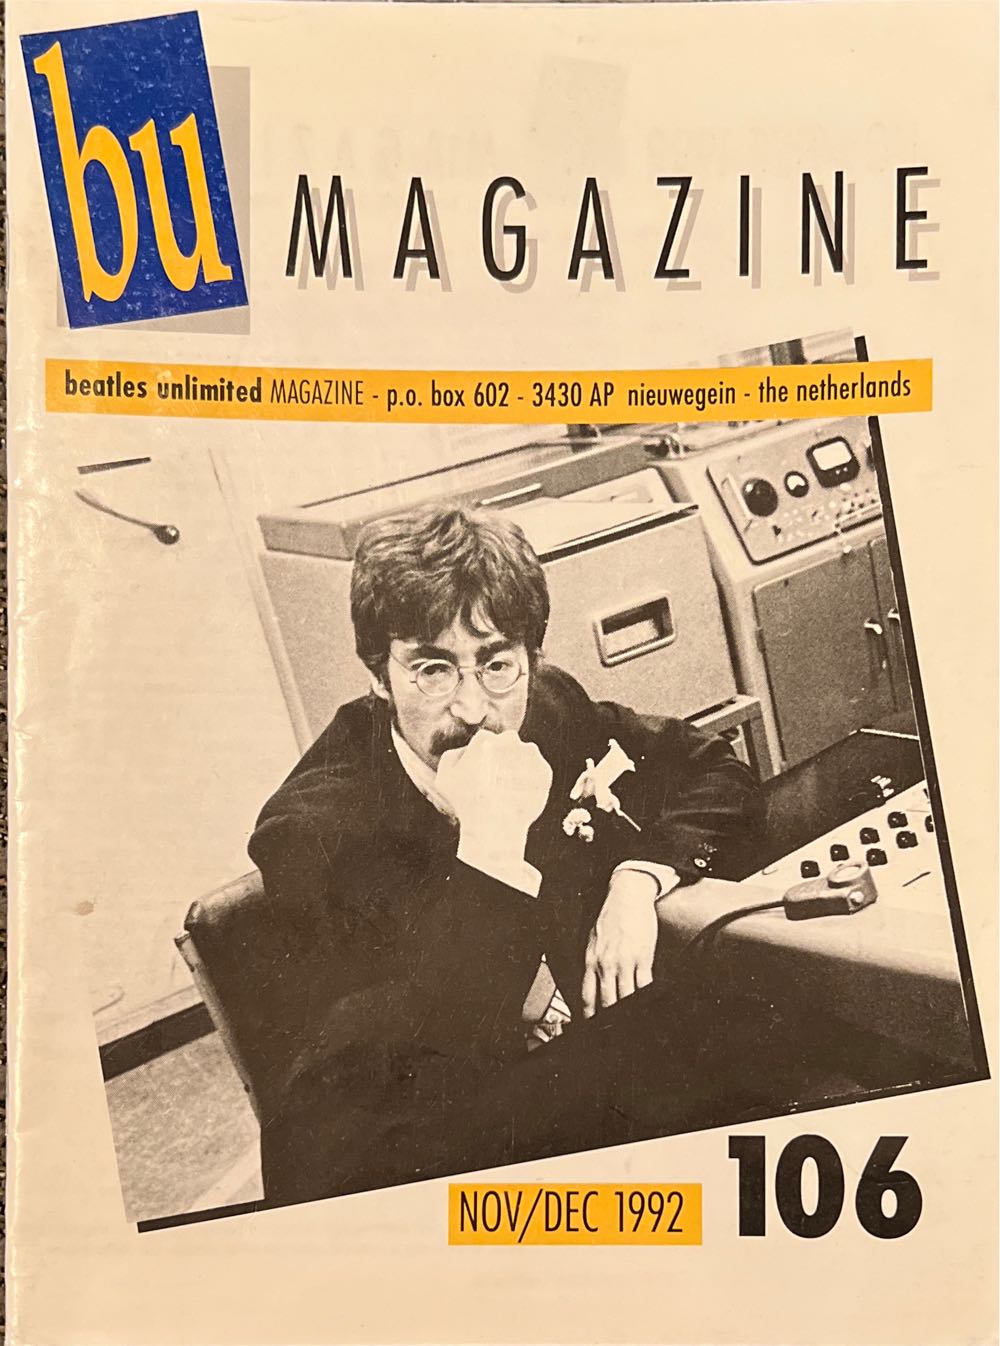 Beatles Unlimited Magazine 106  (November) magazine collectible - Main Image 1